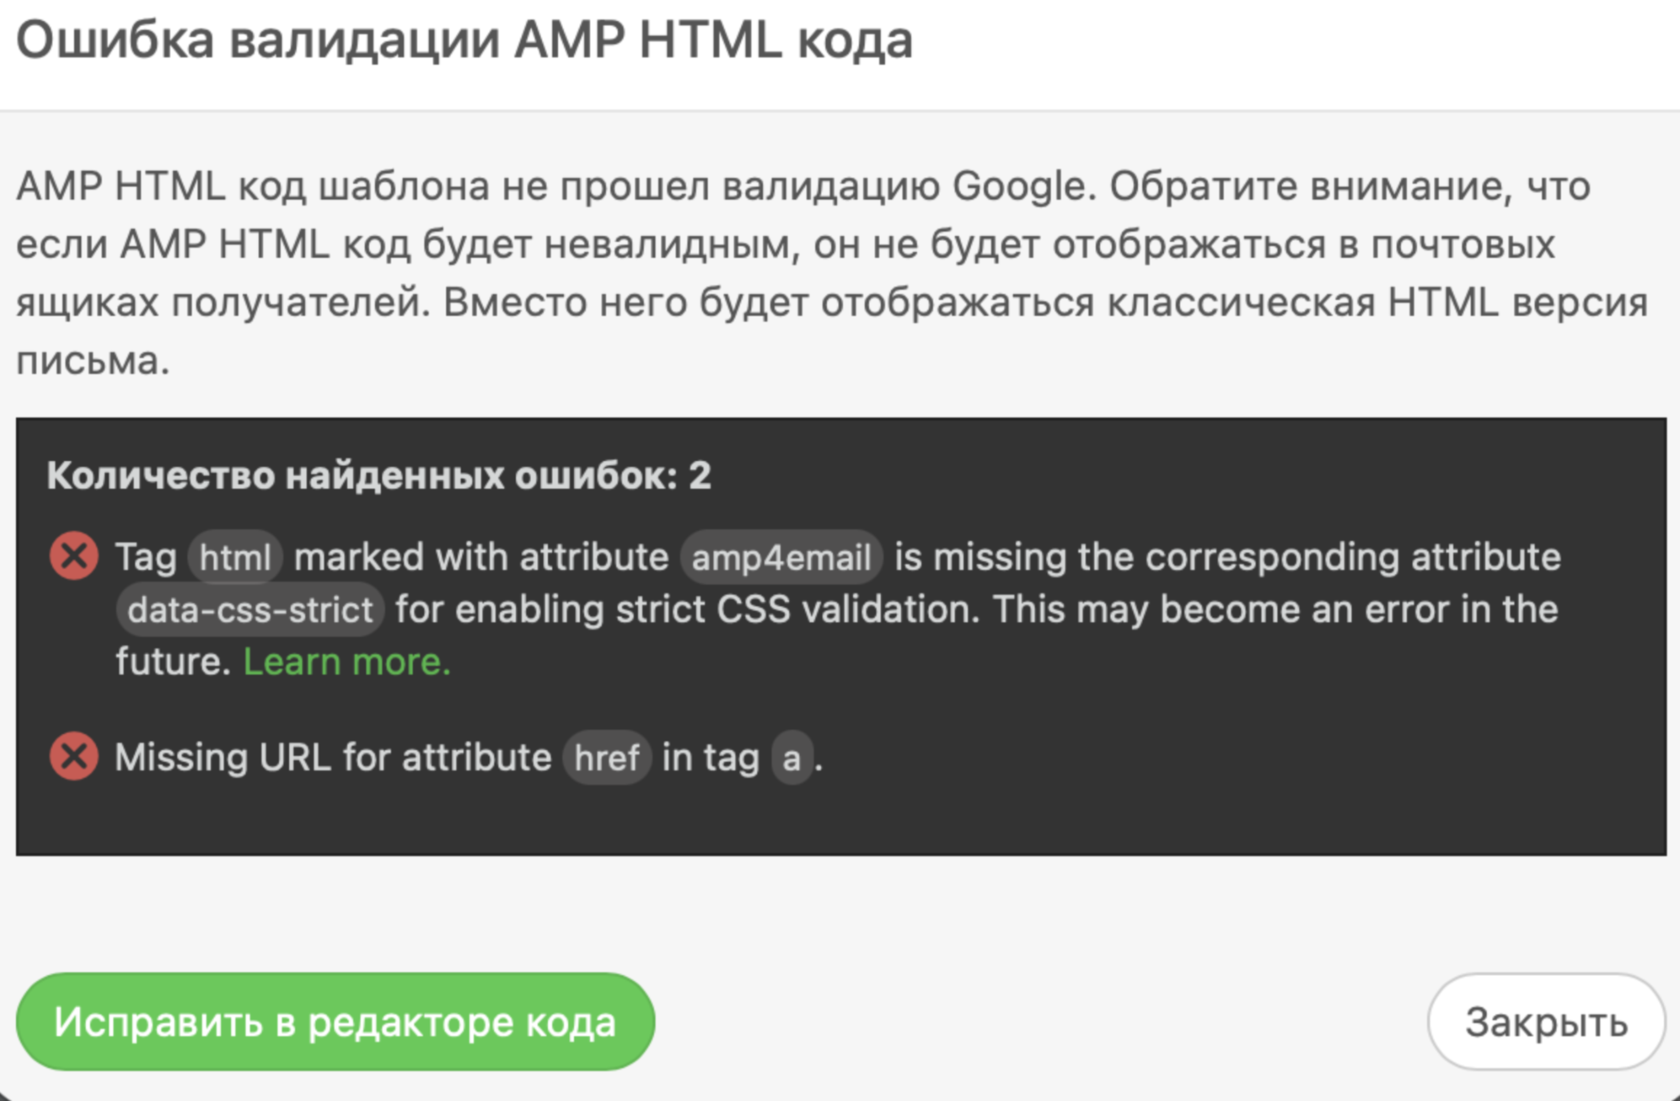 AMP-код и валидация Google